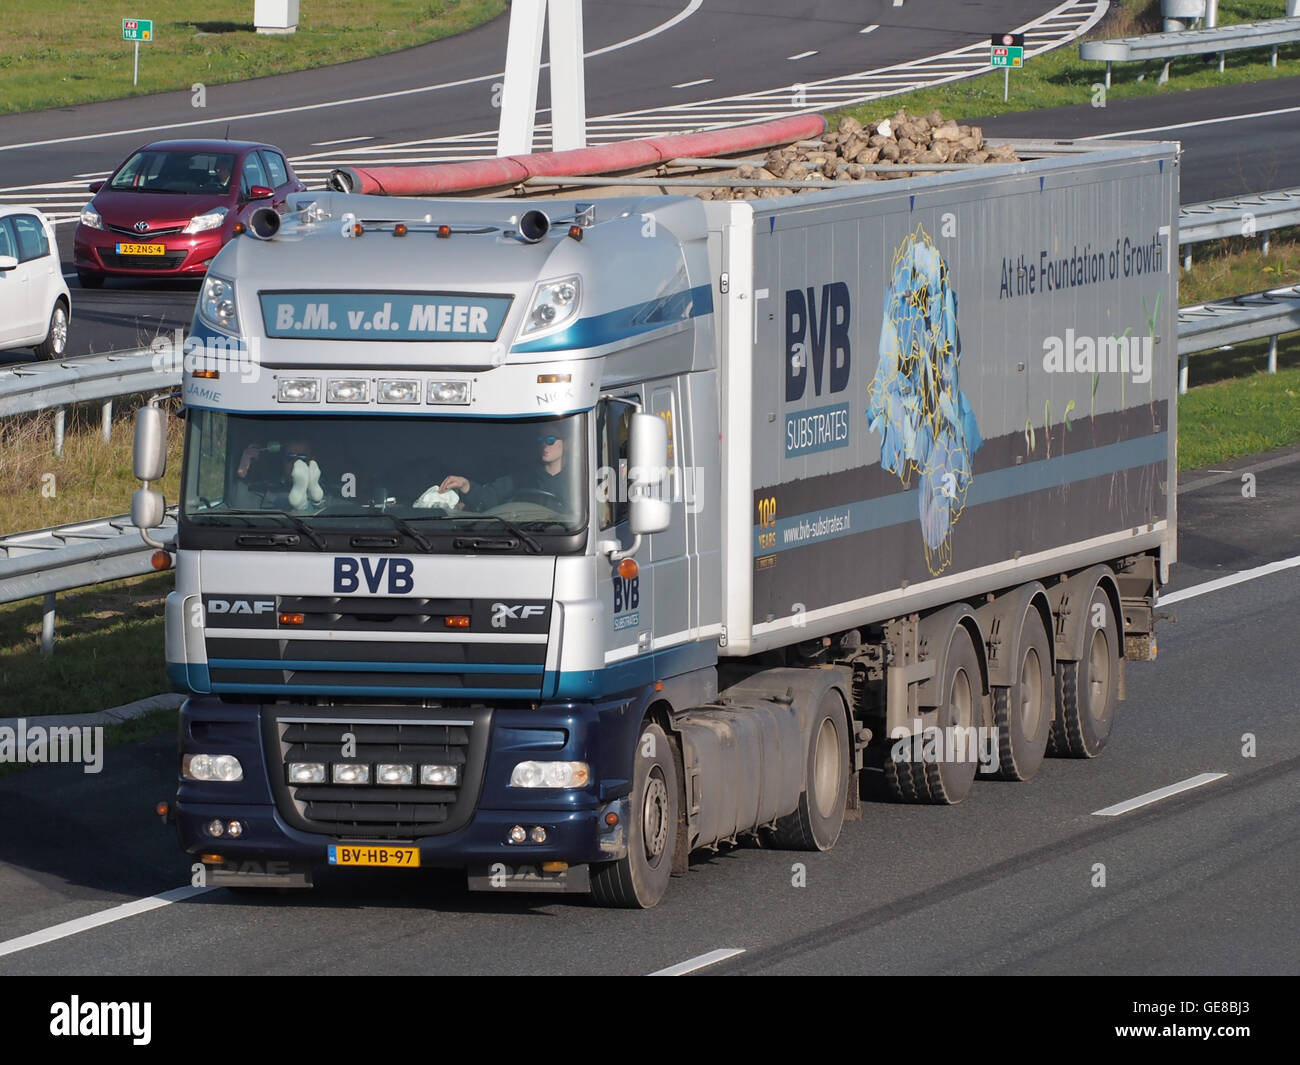 DAF-FX, BM vd Meer, BVB pic2 Stockfoto